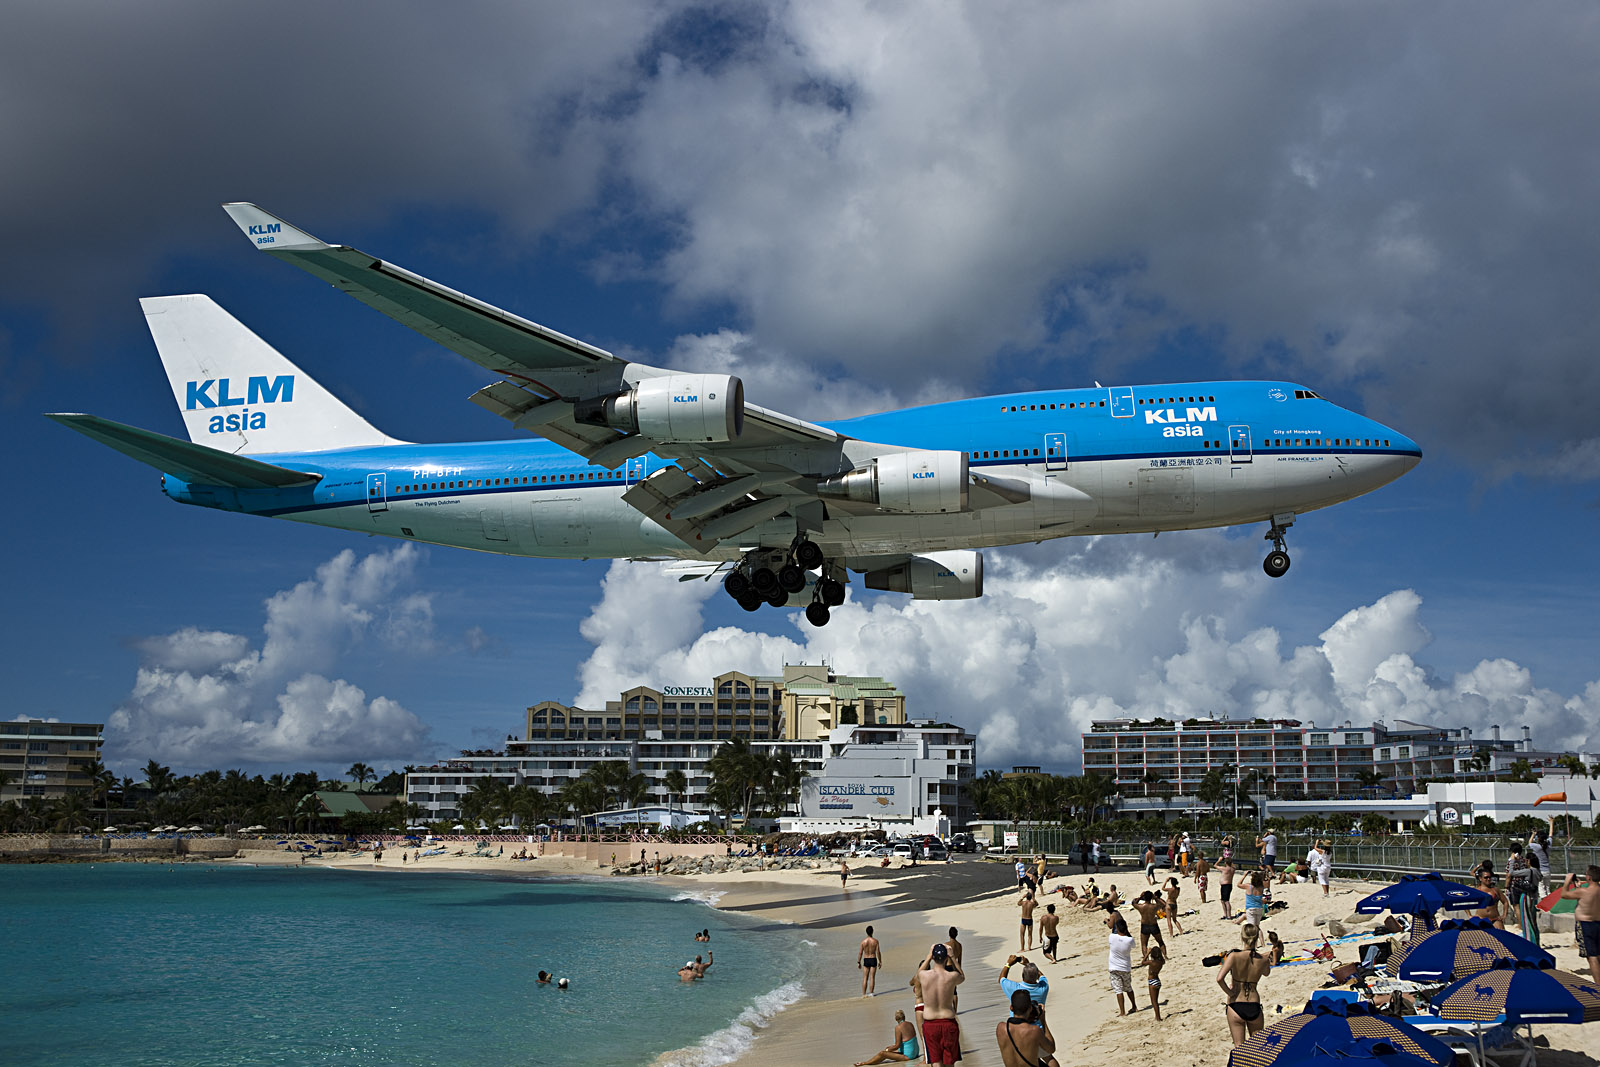 B747 Landung auf St.Maarten